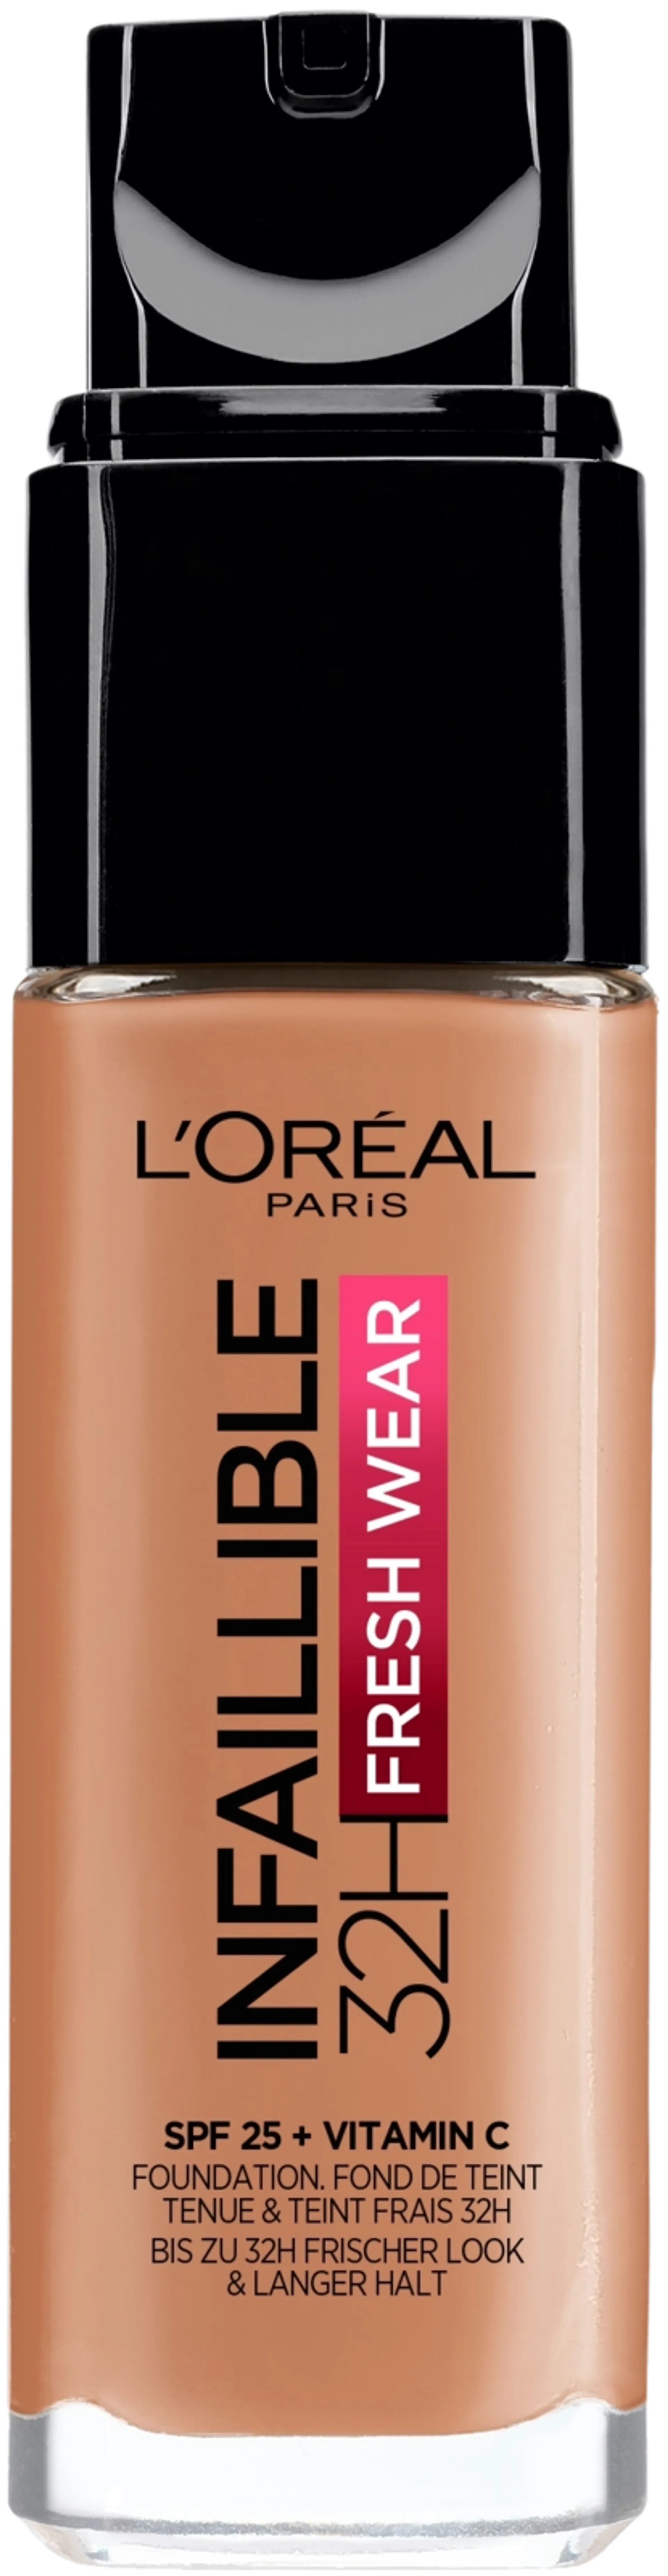 L'Oréal Paris Infaillible Fresh Wear 320 Caramel meikkivoide 30ml - 2